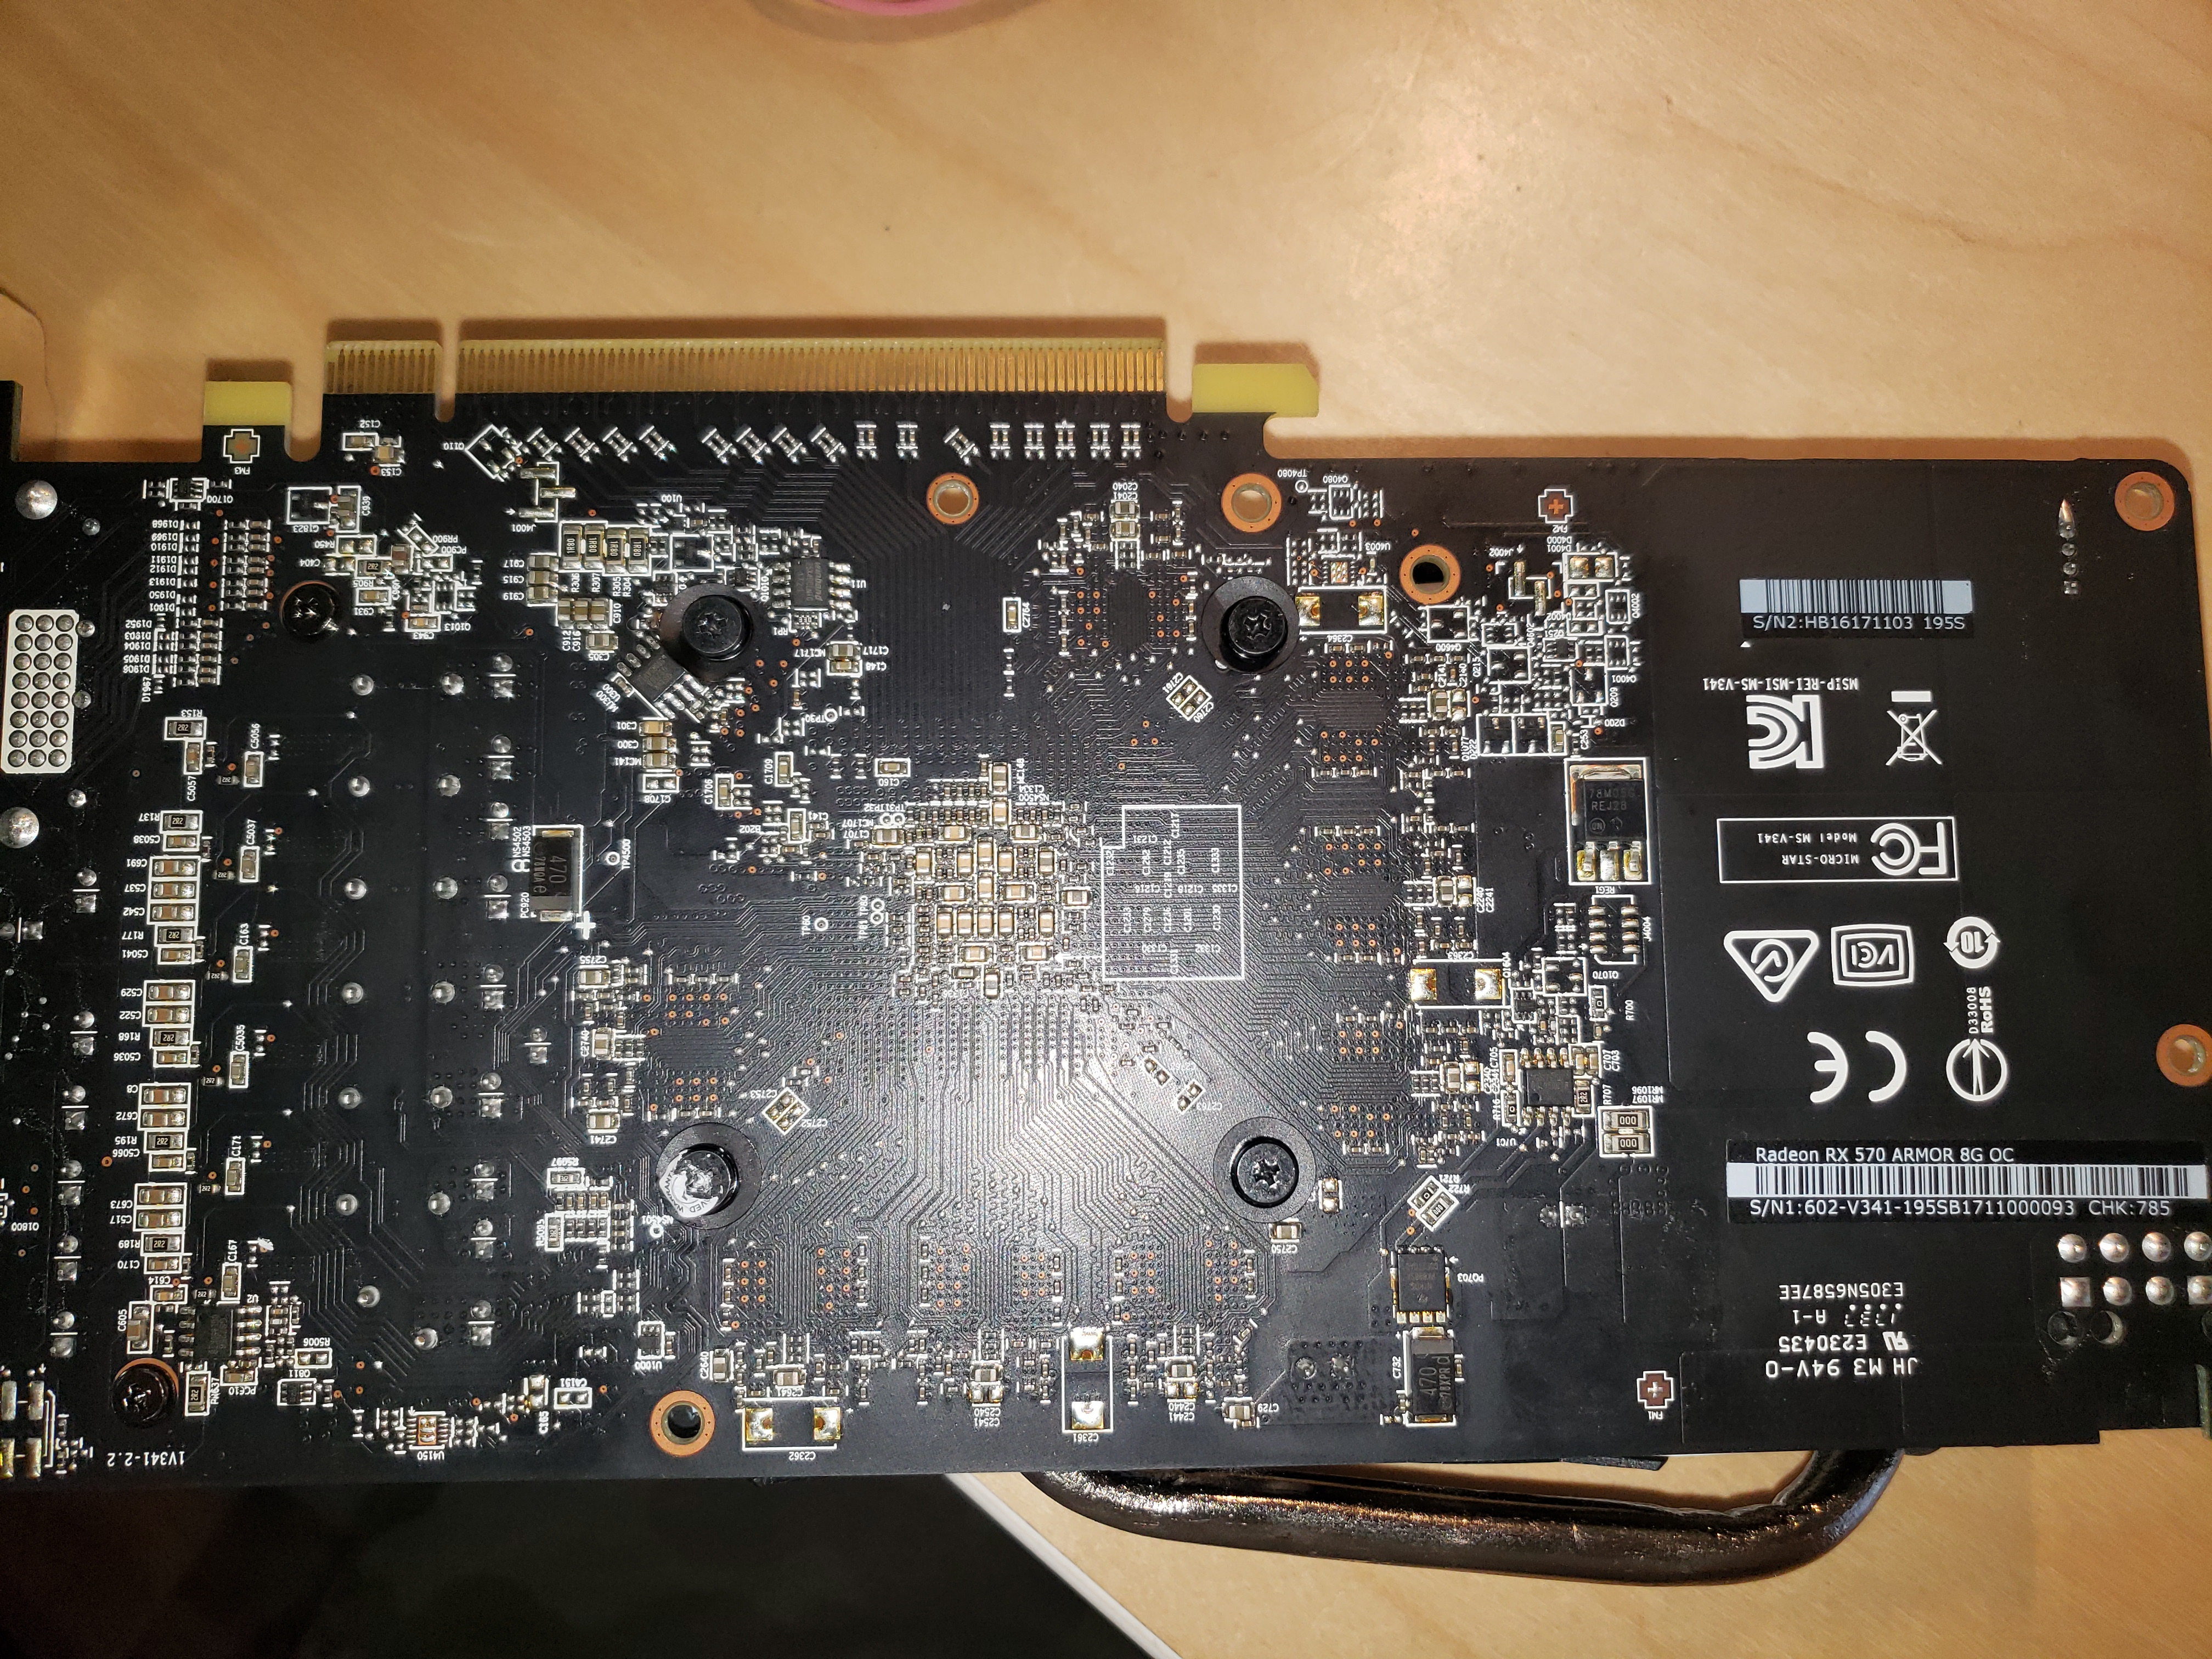 Radeon RX 570 ARMPR 8G OC needs firmware | TechPowerUp Forums